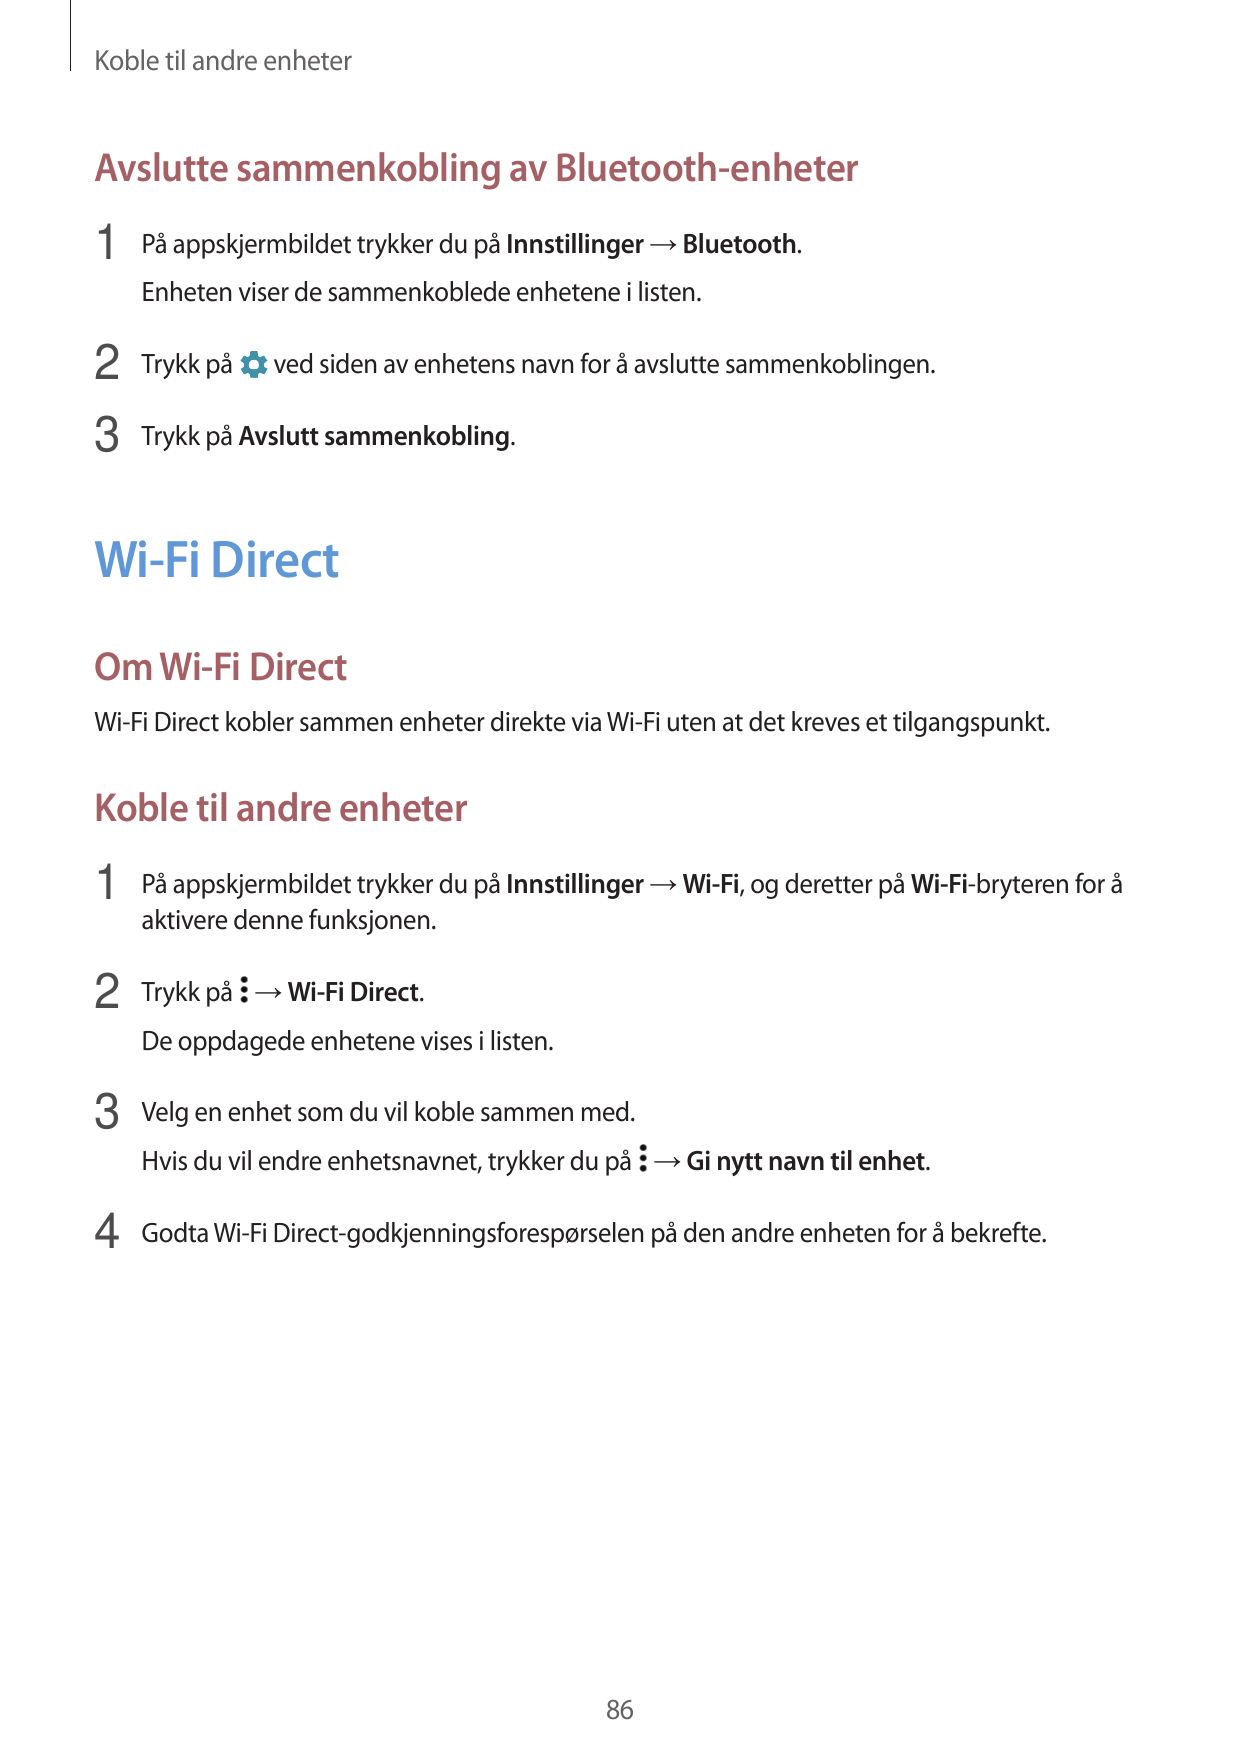 Koble til andre enheterAvslutte sammenkobling av Bluetooth-enheter1 På appskjermbildet trykker du på Innstillinger → Bluetooth.E